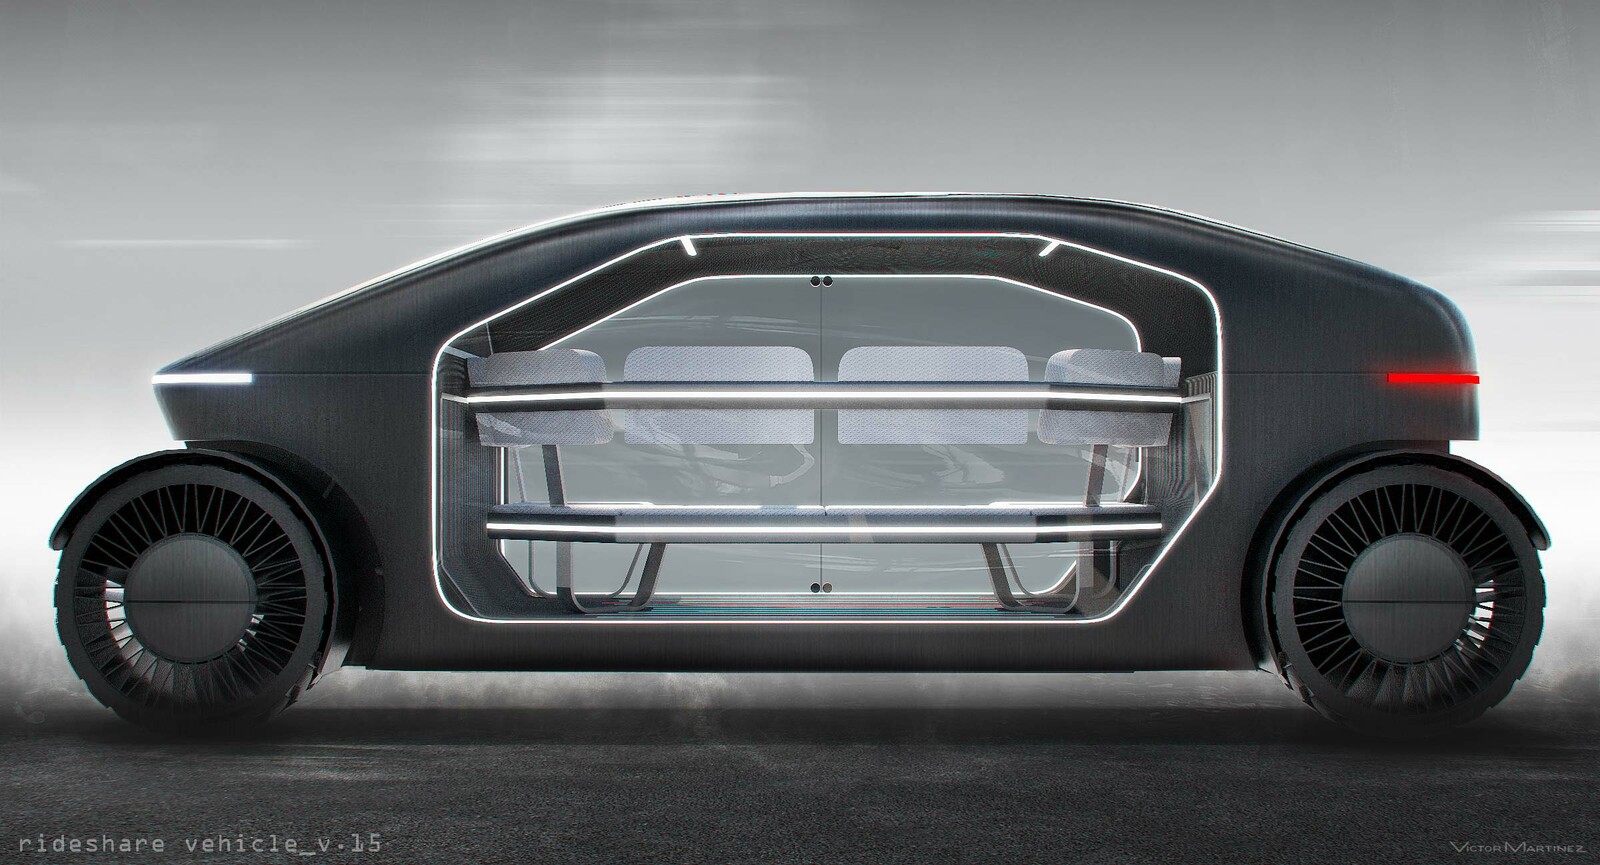 Victor Martinez Westworld Autonomous Rideshare Vehicle designed by